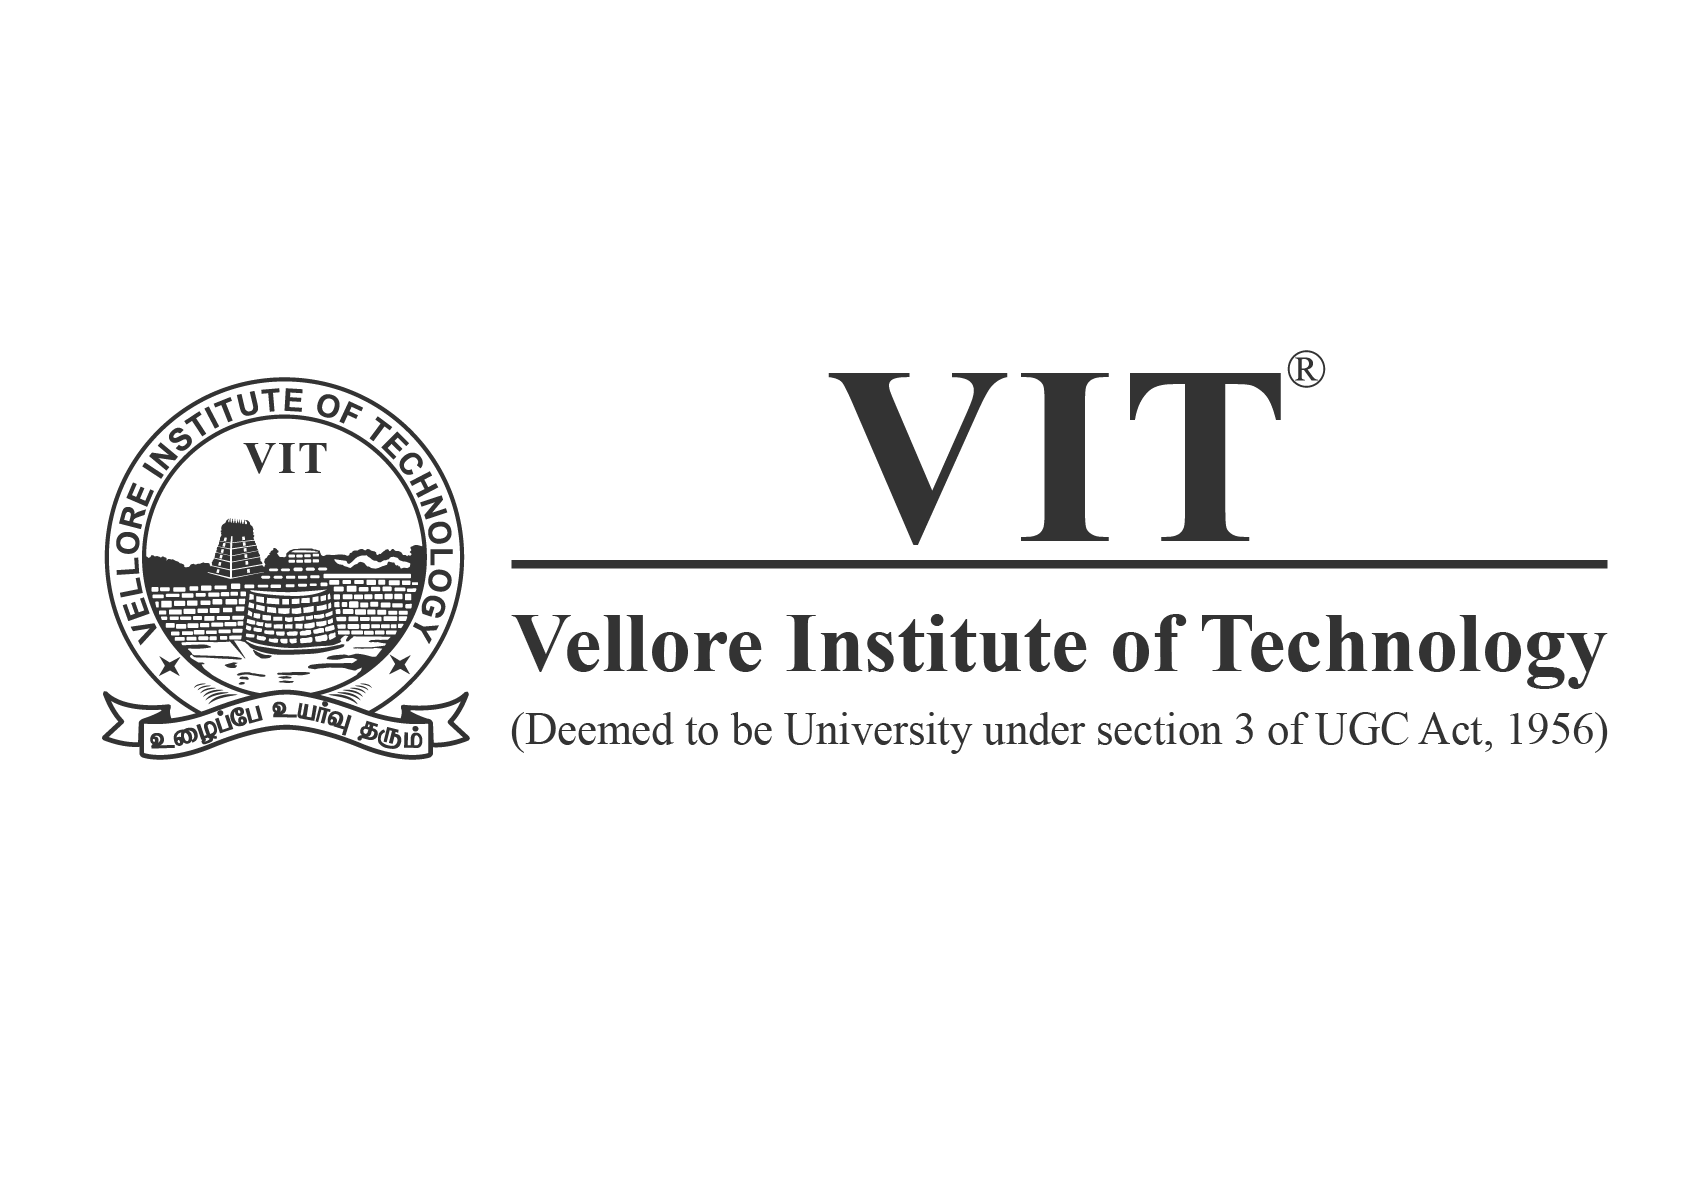 VIT University.png